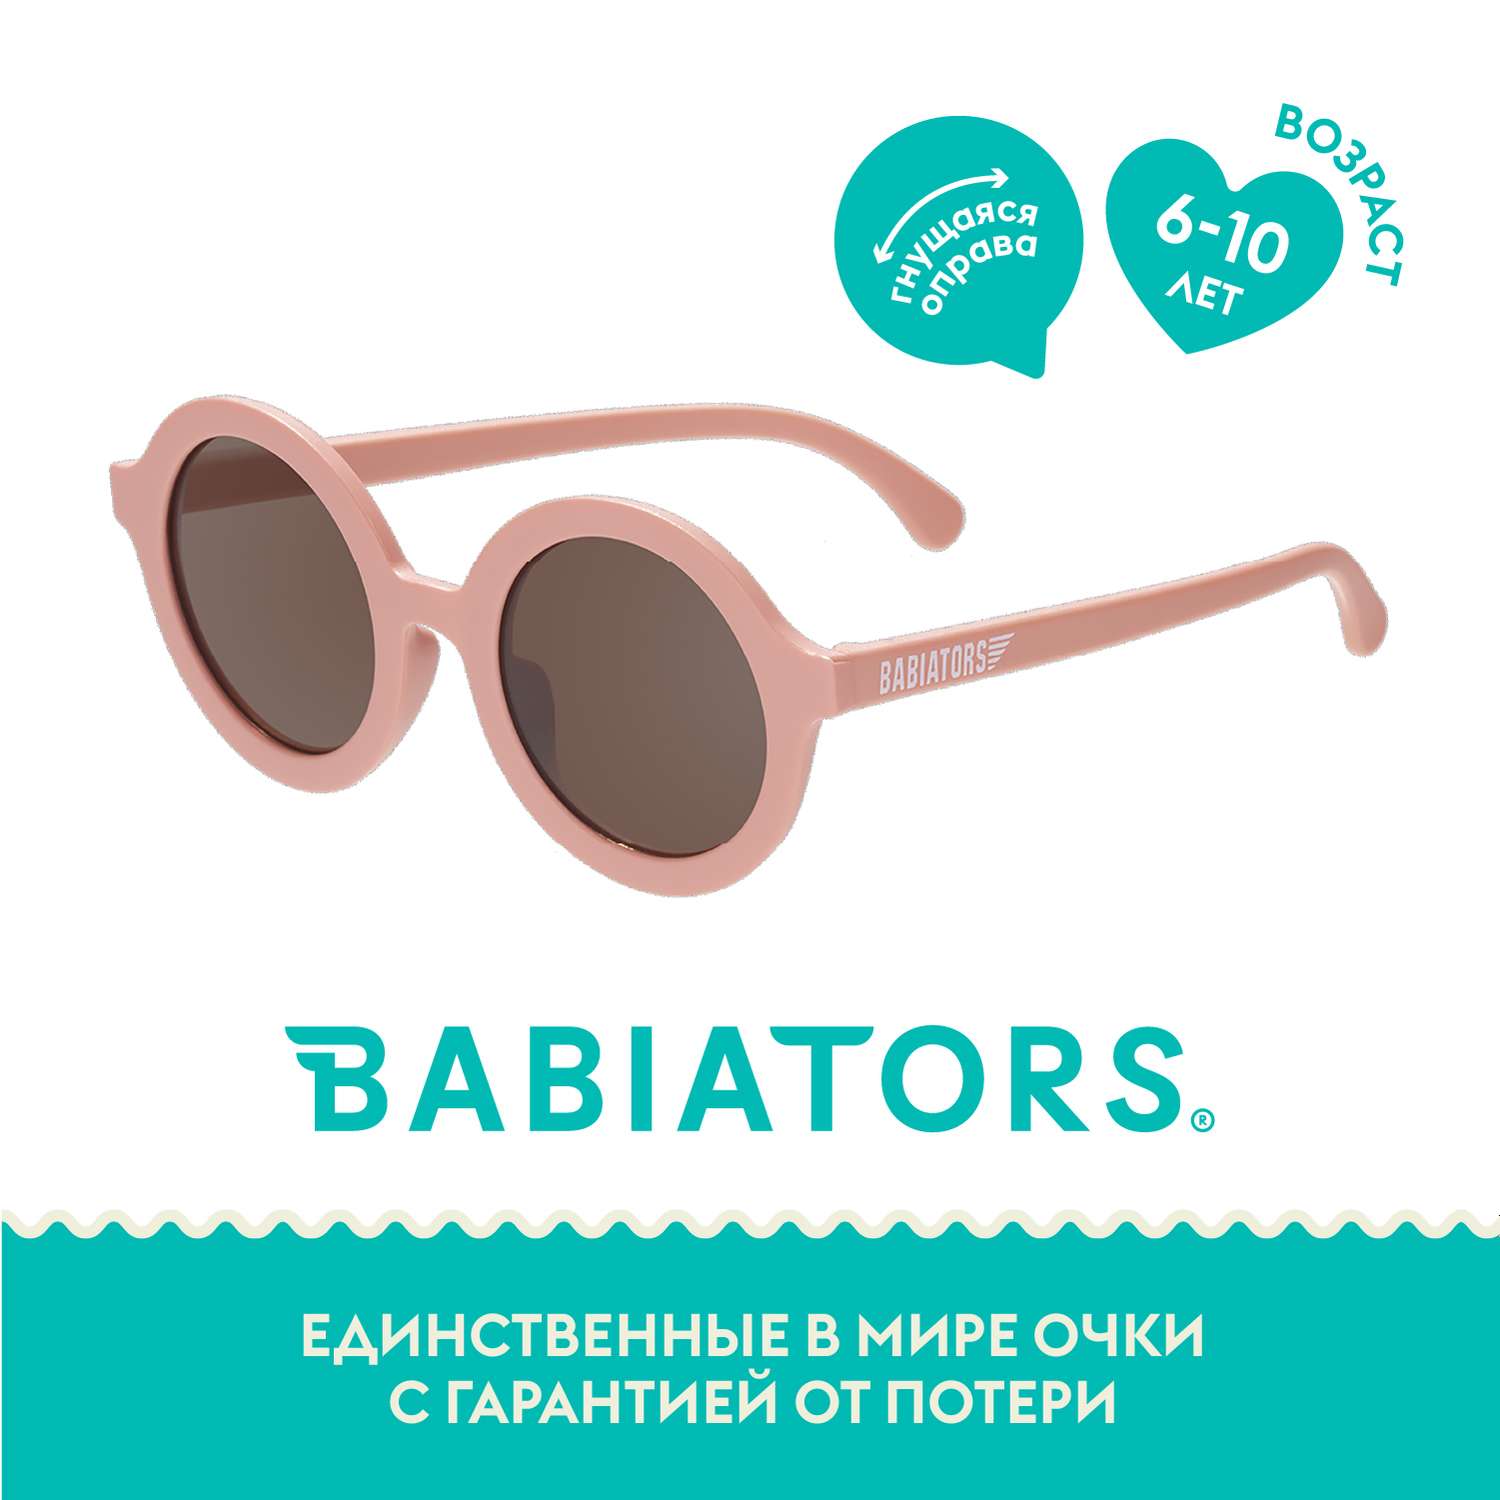 Детские солнцезащитные очки Babiators Round Персиковое настроение 6+ лет RND-006 - фото 2